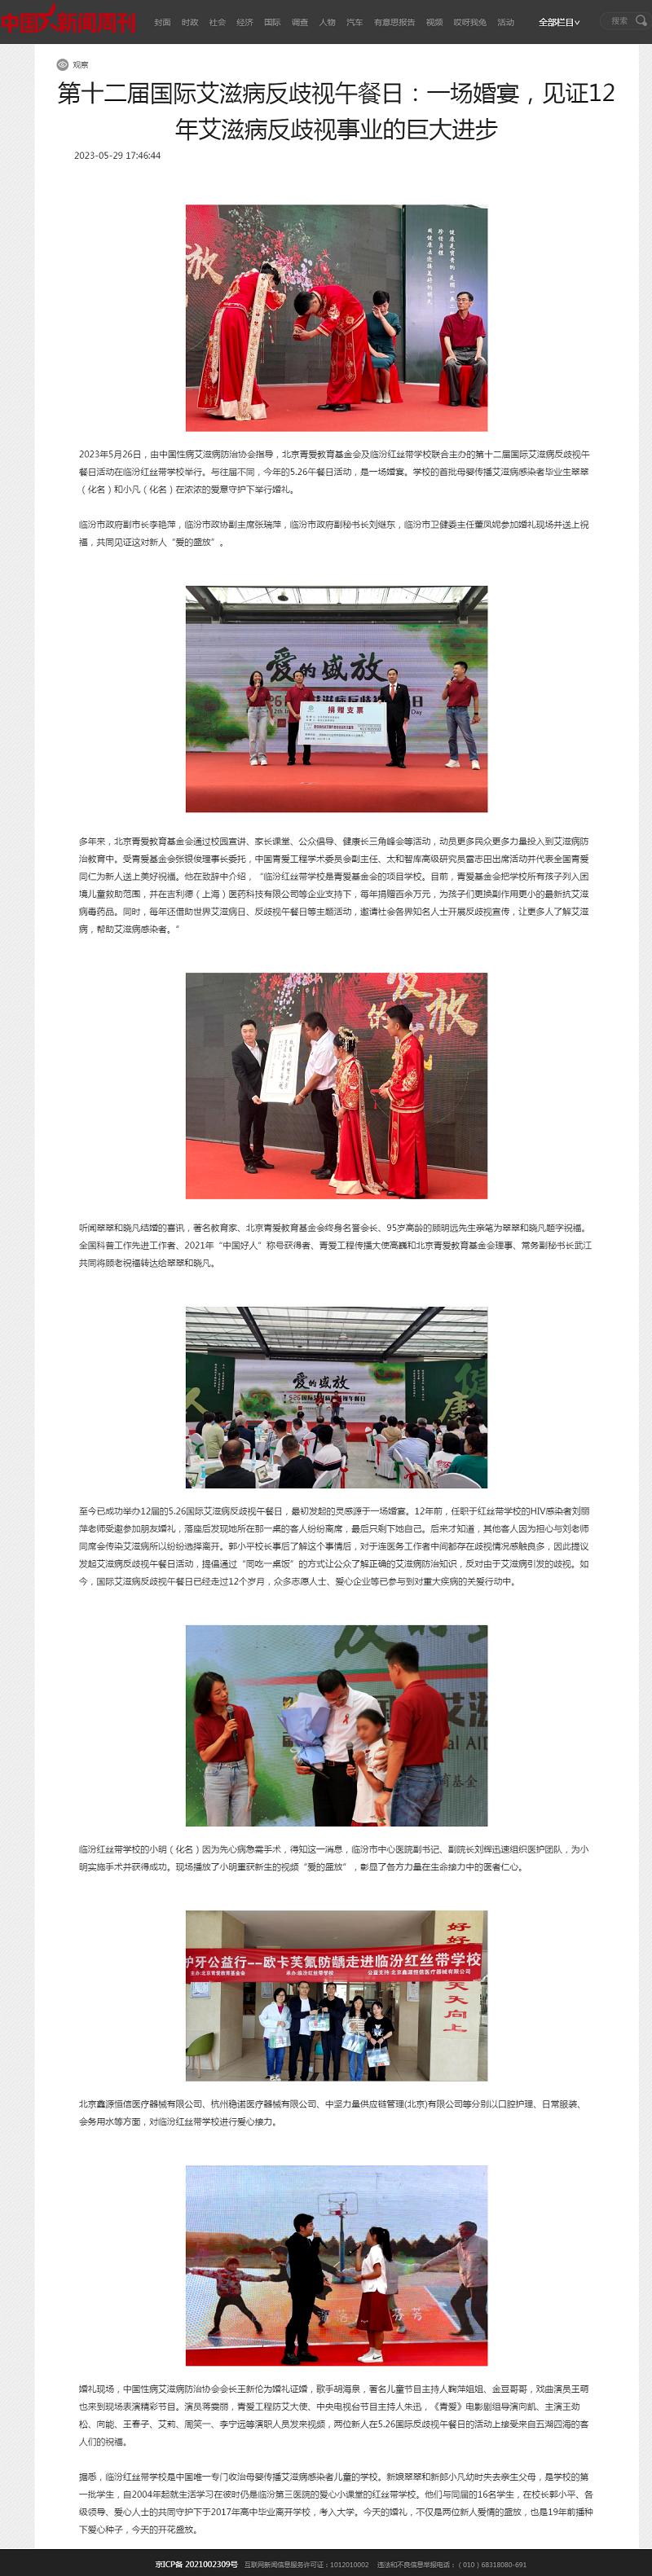 第十二届国际艾滋病反歧视午餐日：一场婚宴，见证12年艾滋病反歧视事业的巨大进步 - 中国新闻周刊网